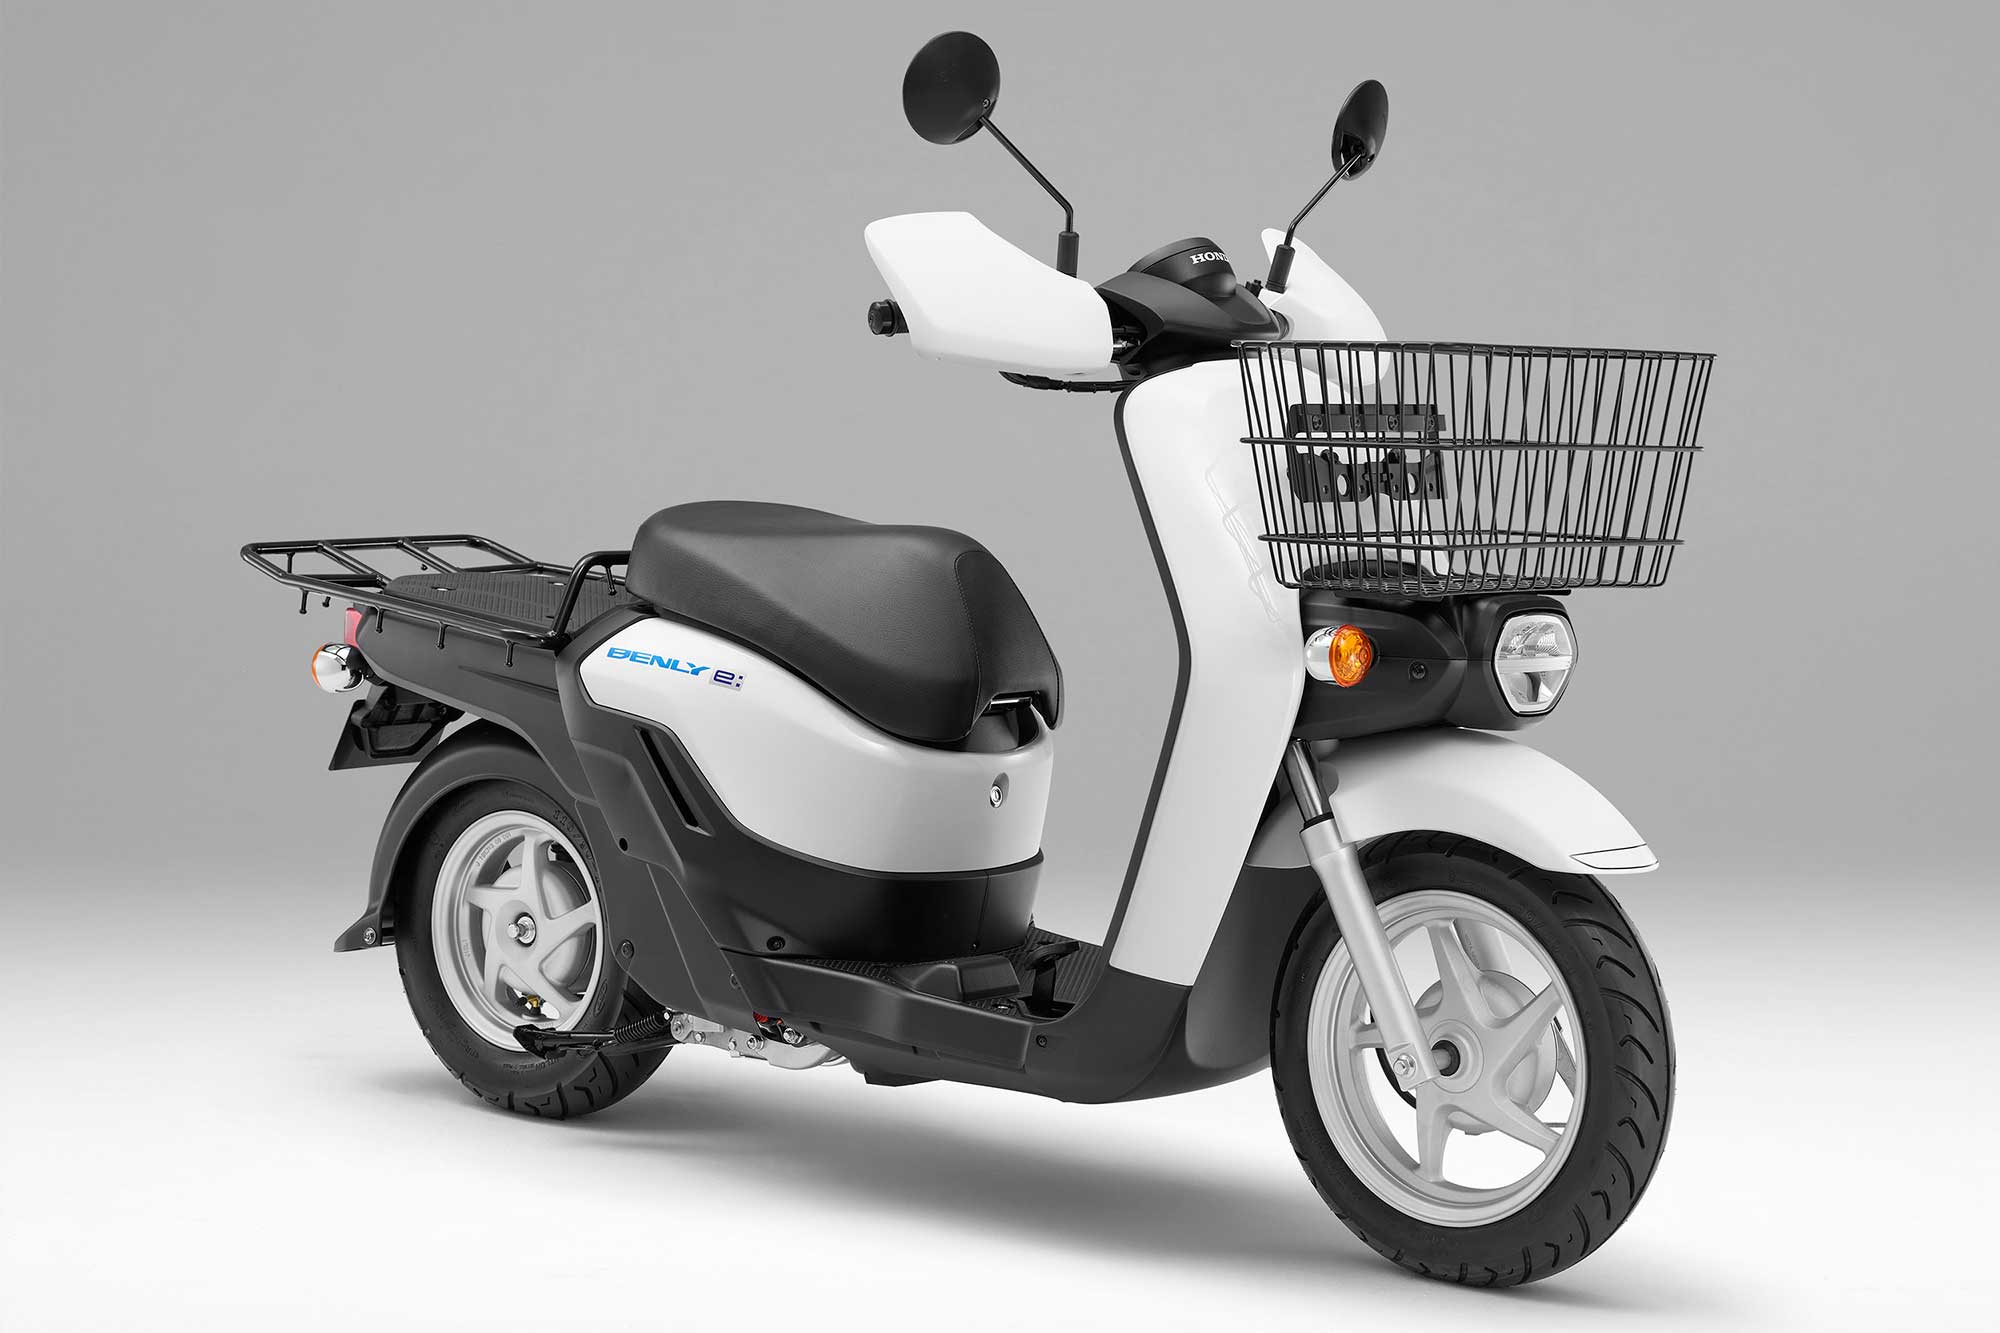 日本郵便が配達用にホンダの電気バイク Benly E 導入 社会の電動化が加速するか Evsmartブログ